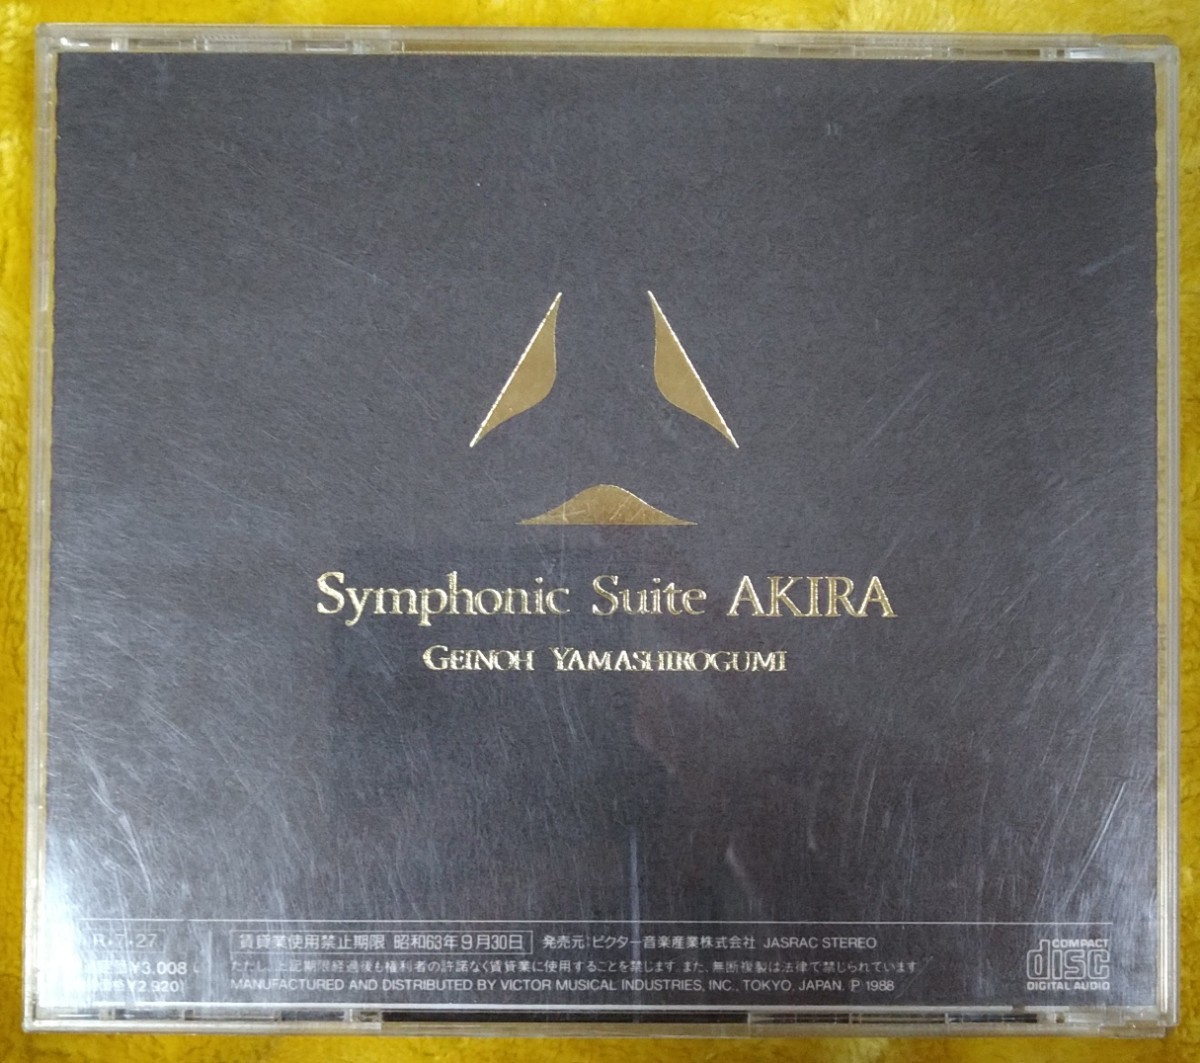 芸能山城組 Symphonic Suite AKIRA 廃盤国内盤中古CD geinoh yamashirogumi シンフォニック・スウィート アキラ 大友克洋 VDR-1532_画像2